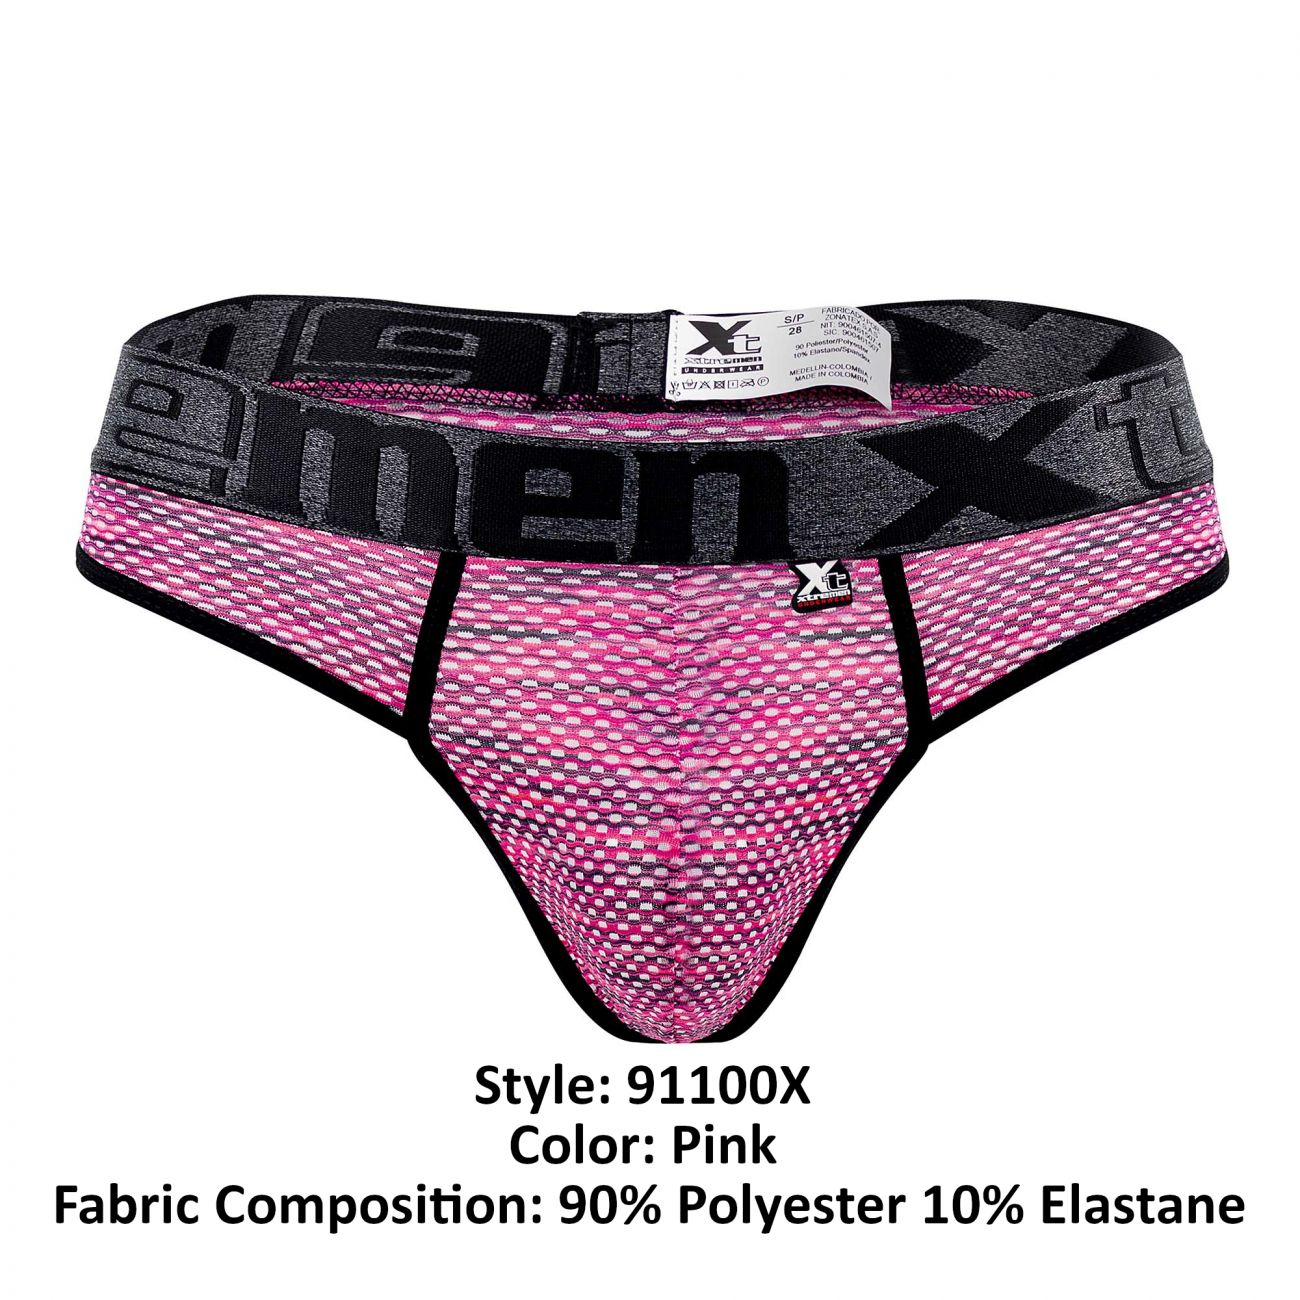 Xtremen 91100X Microfiber Mesh Thongs Pink